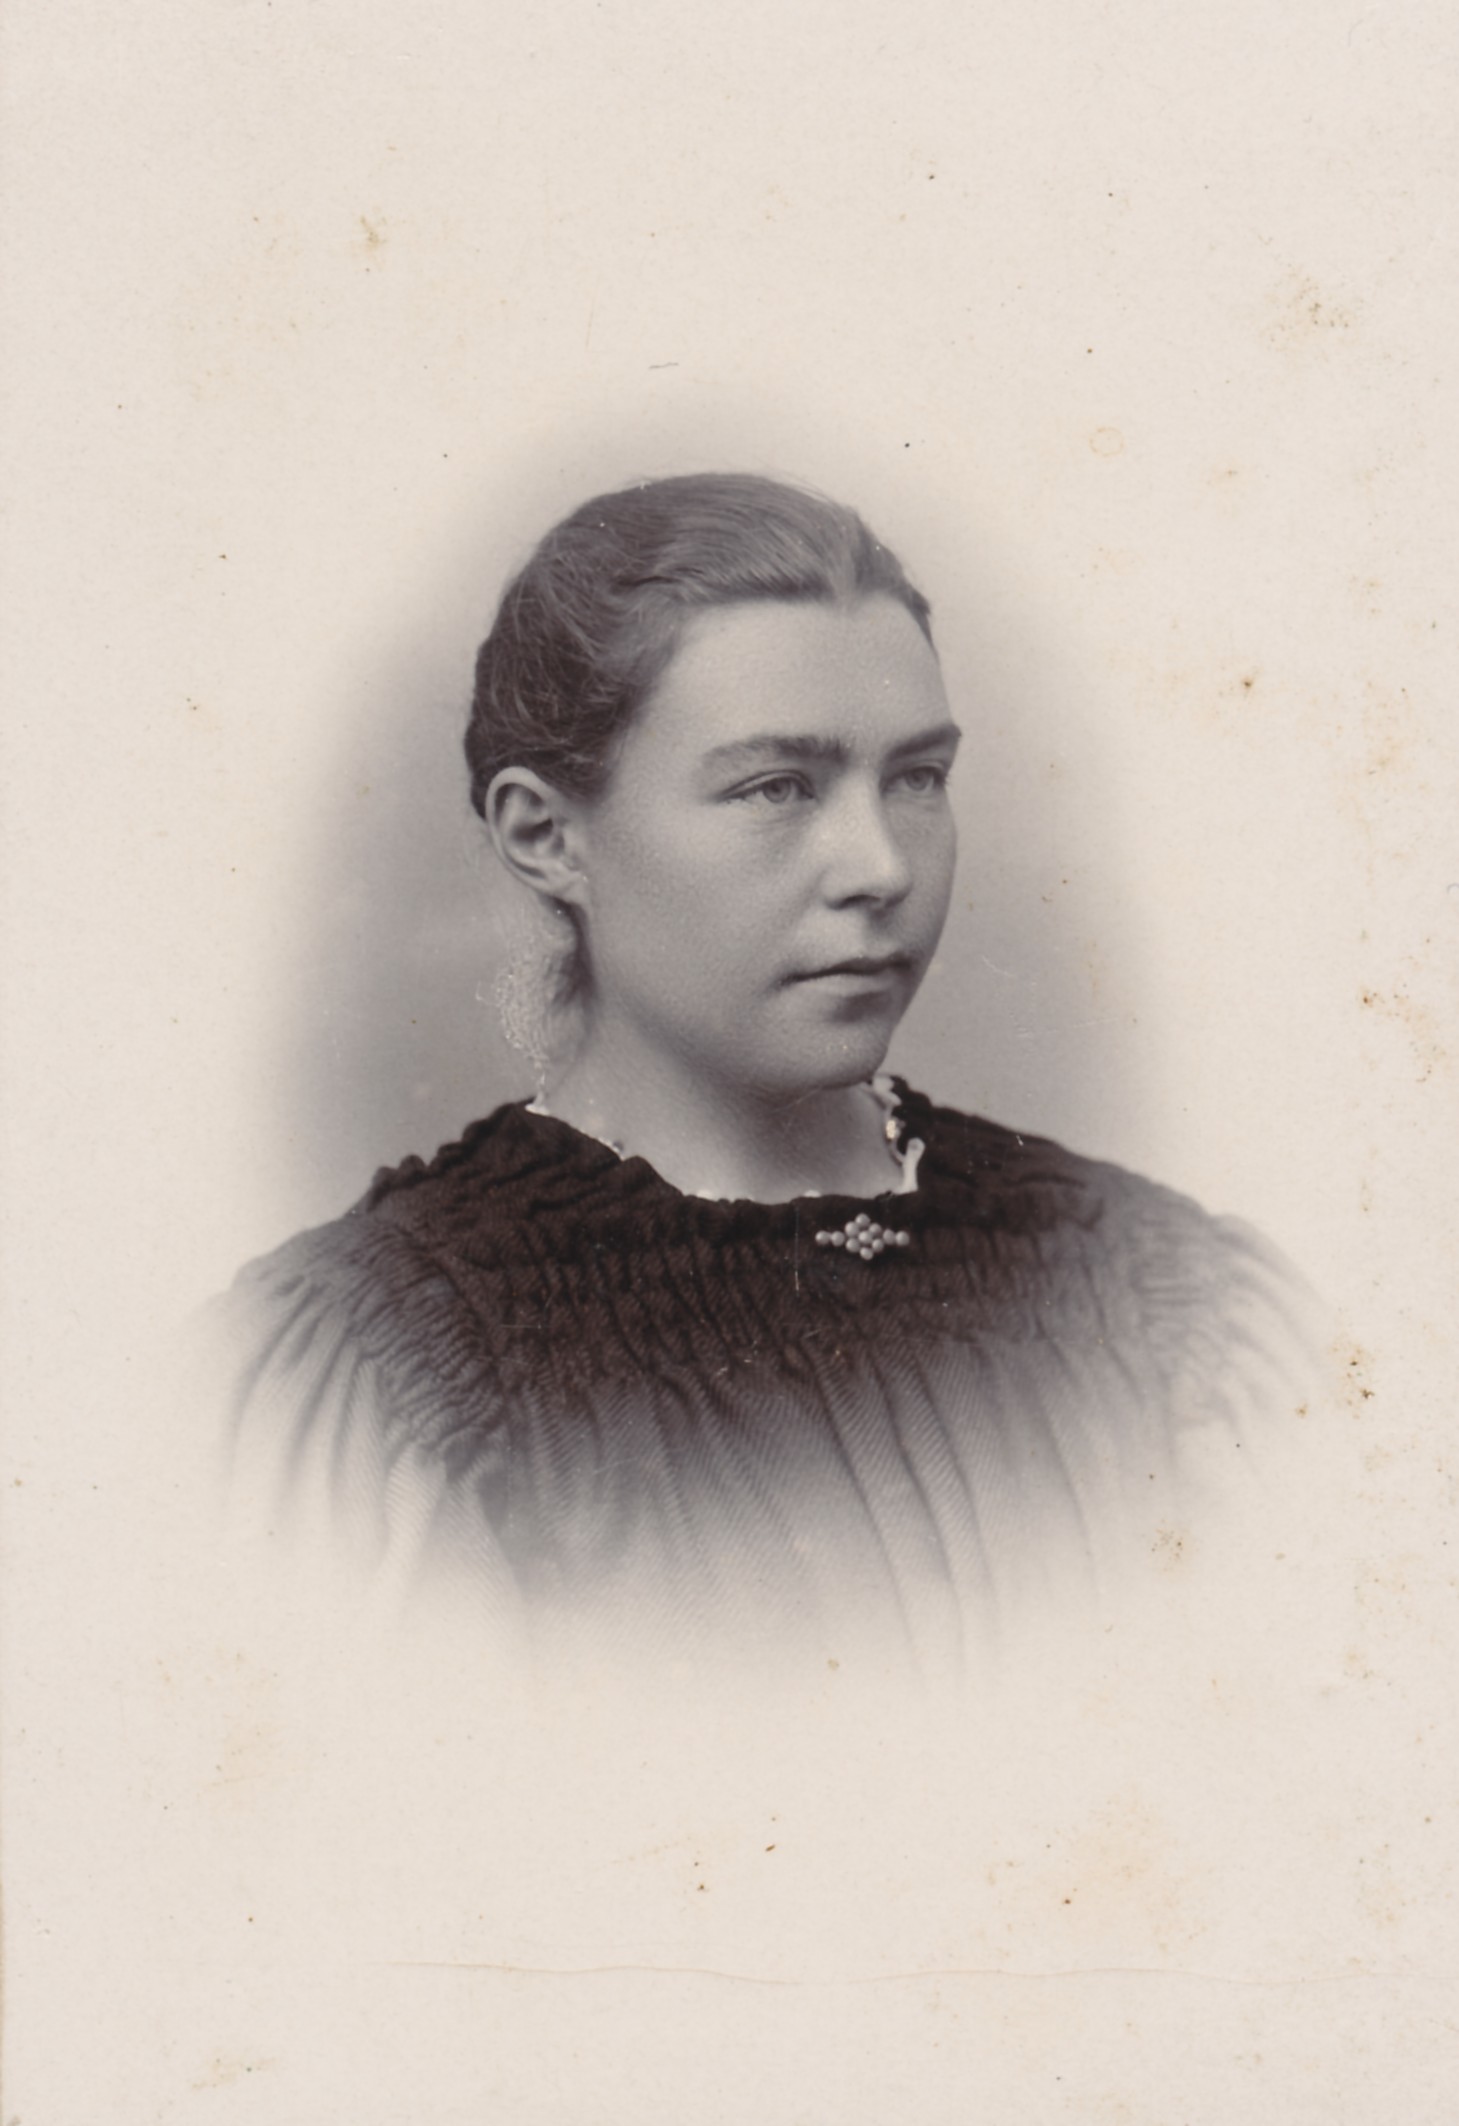 Anna Andersen, Vig - ca. 1900 (B9499)